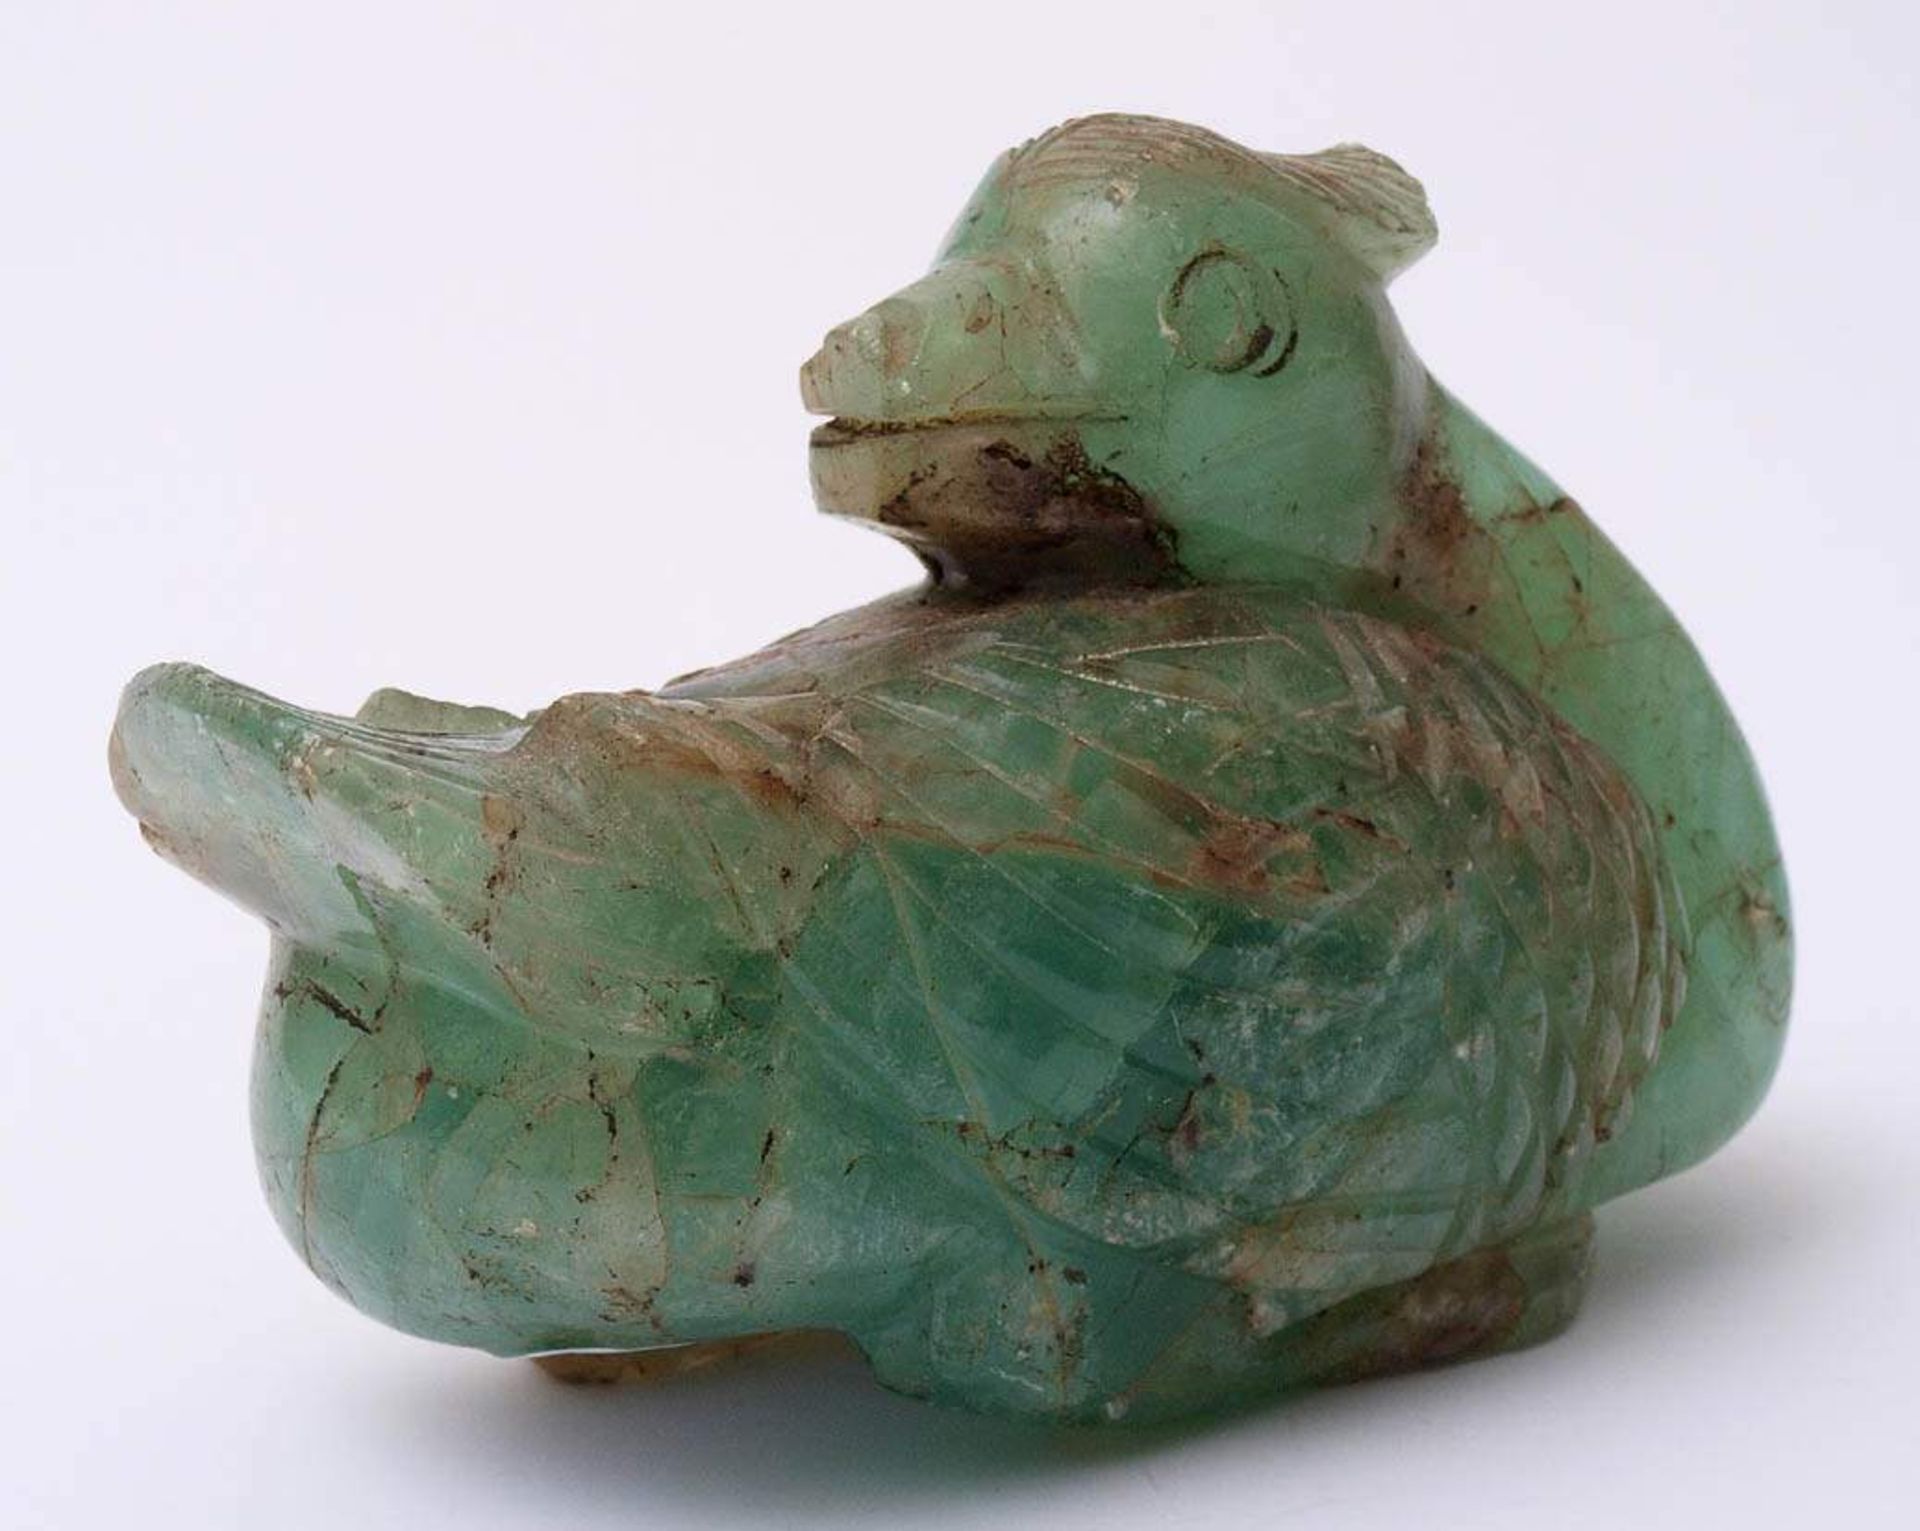 Tierfigurine, China, 19.Jhdt.Sitzender Vogel. Grün durchschimmernder Halbedelstein. L.13,5cm. - Bild 3 aus 3